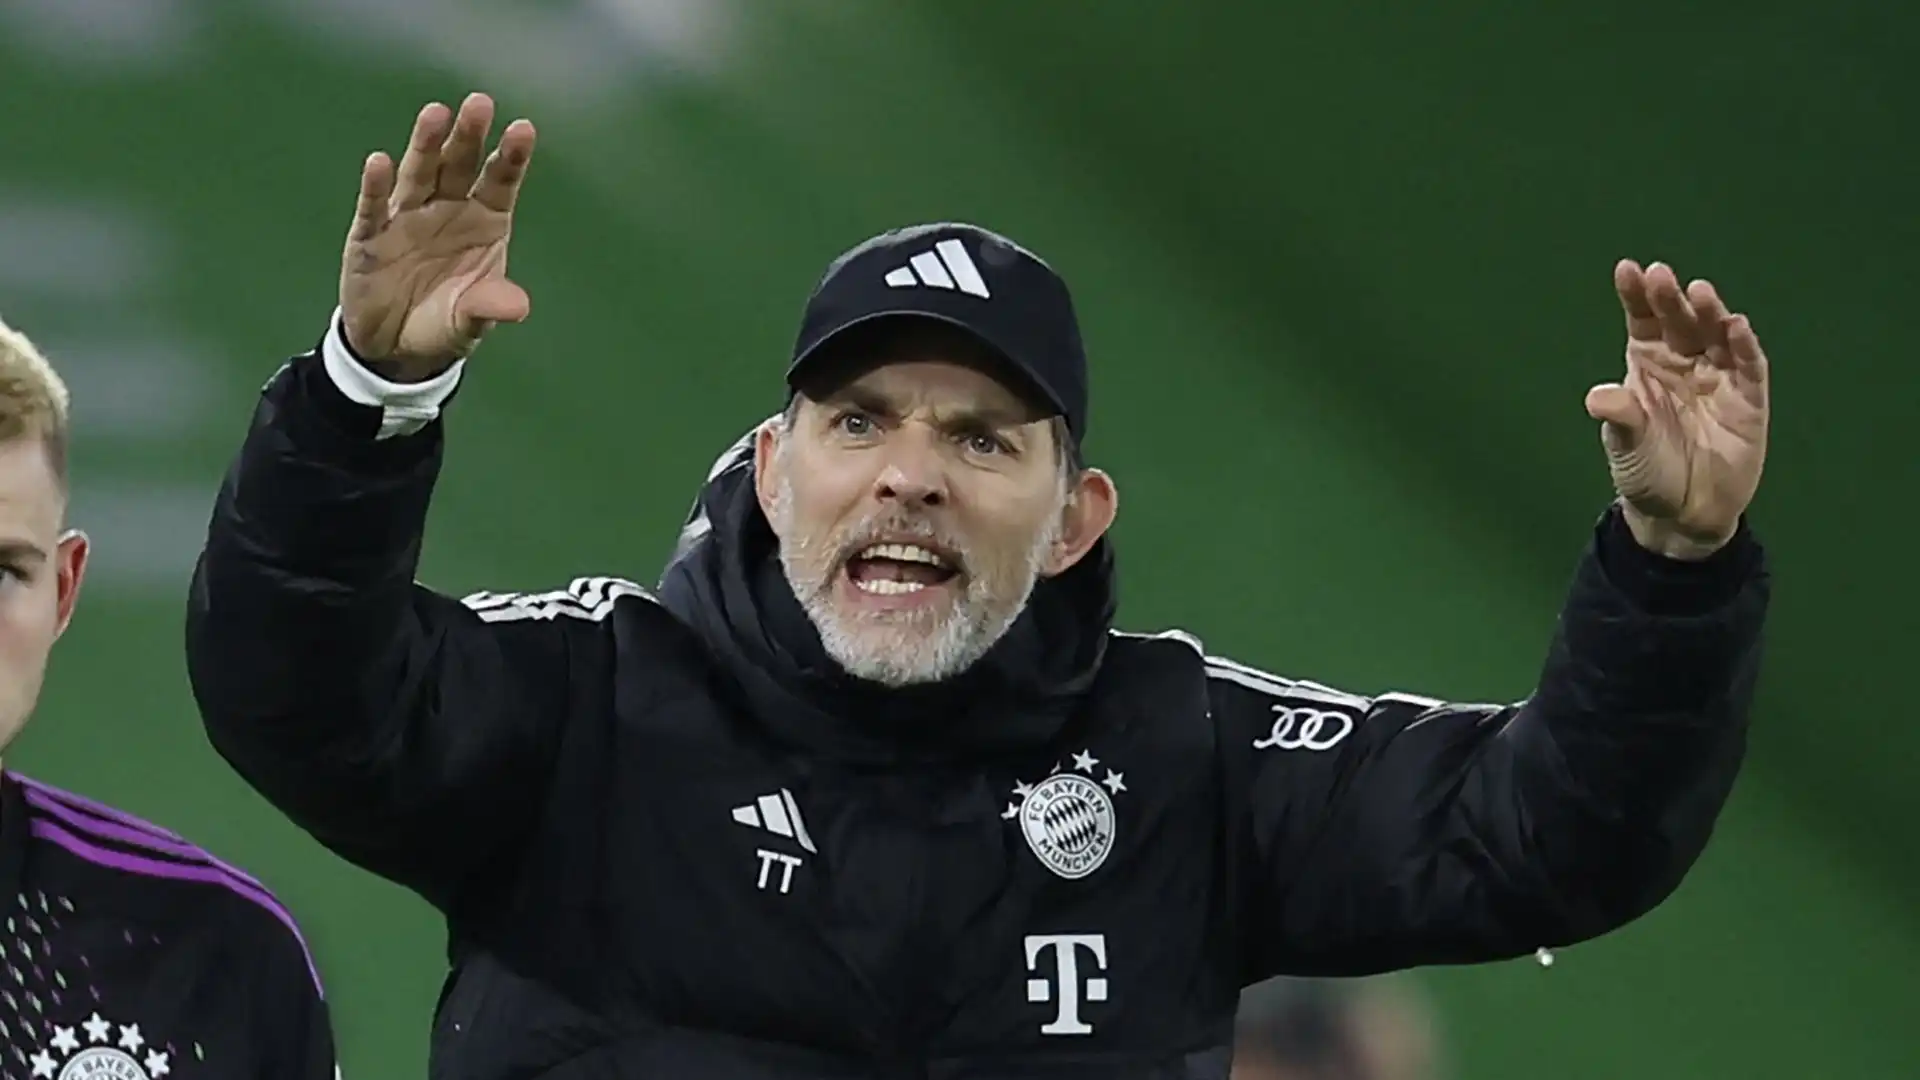 Tuchel e il Bayern hanno deciso di separarsi per le difficoltà incontrate in questa stagione